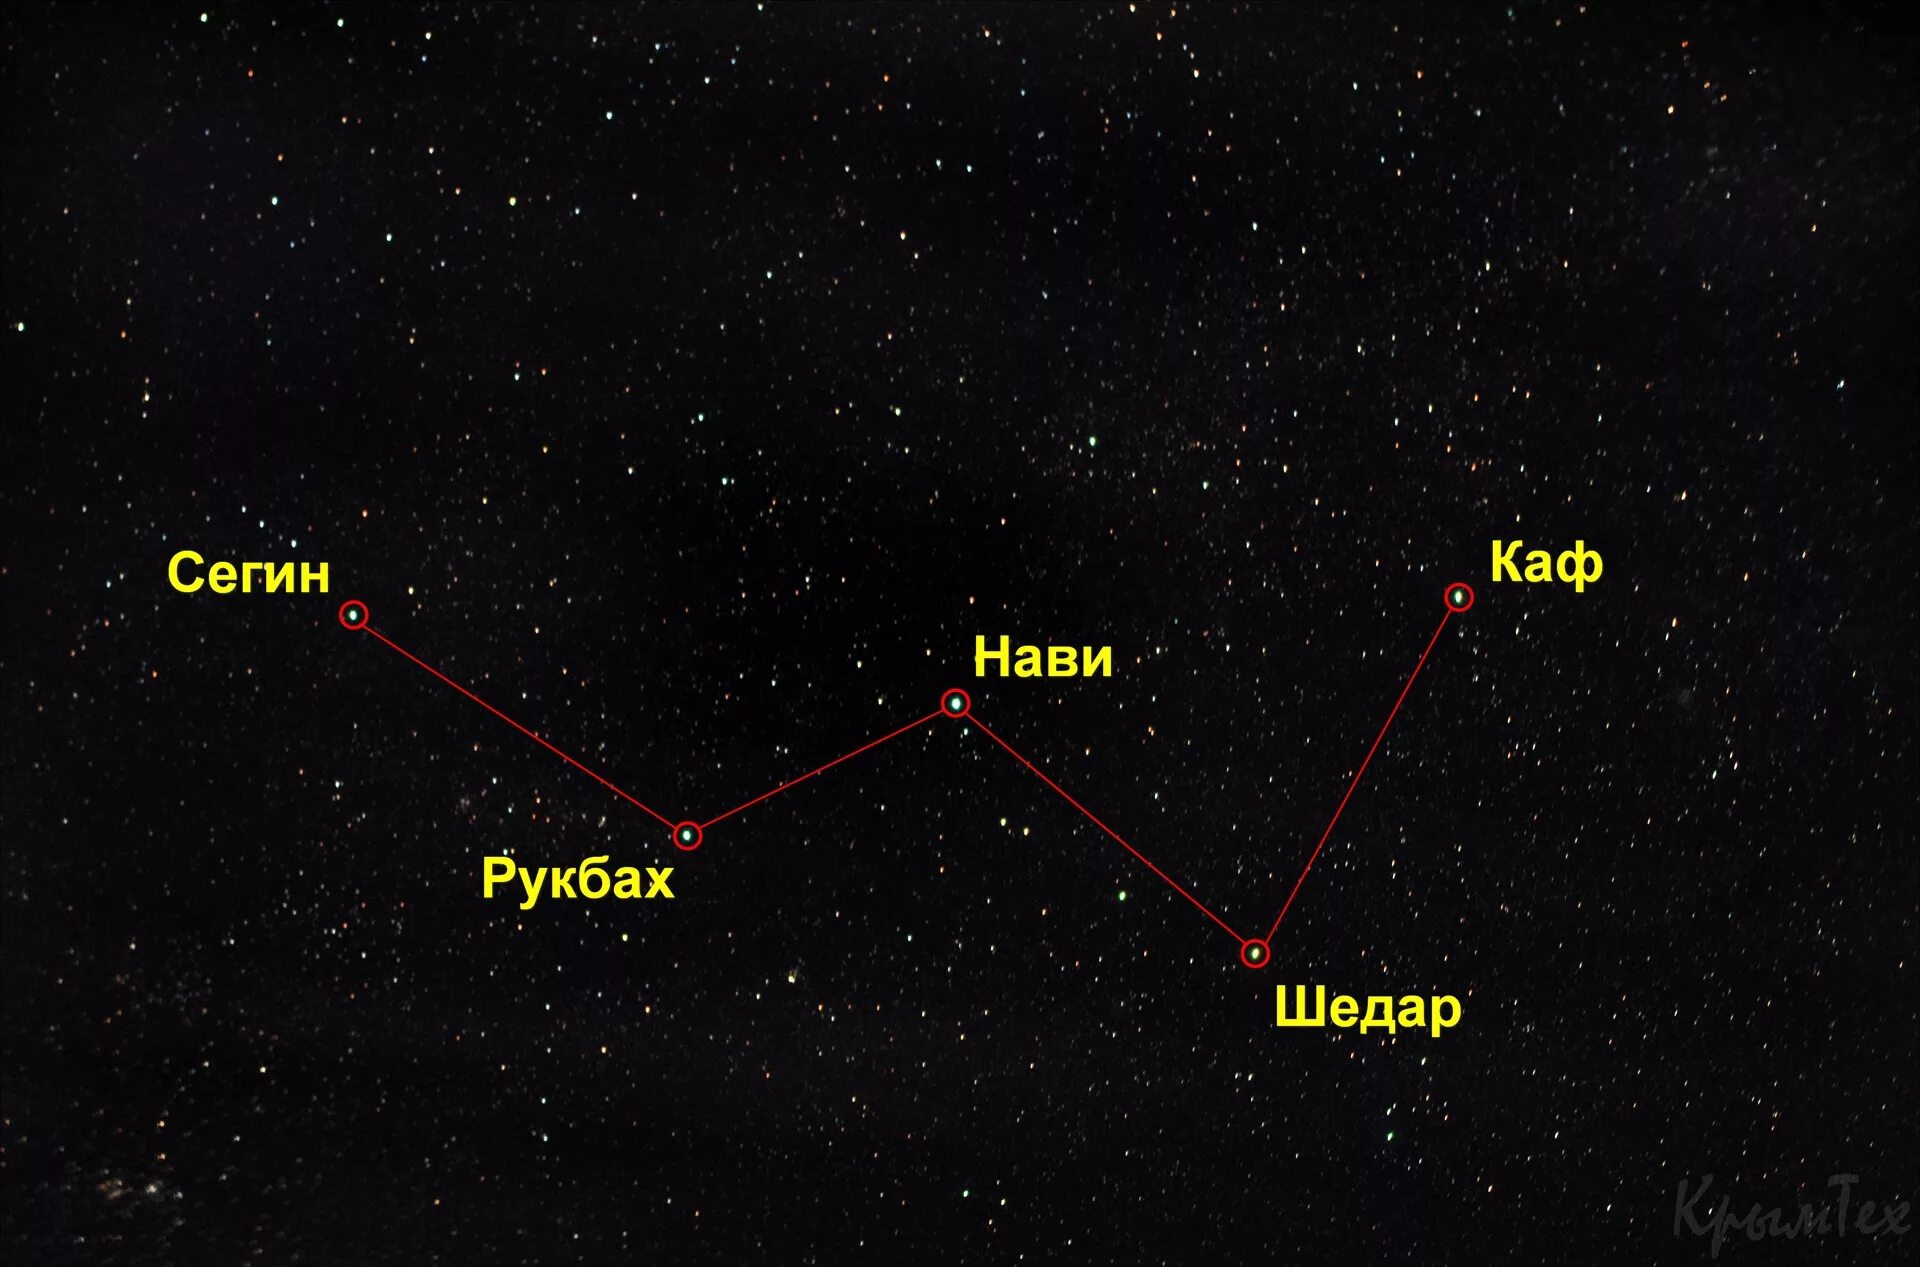 Созвездие в форме буквы. Кассиопея Созвездие название звезд. Звезда Сегин Кассиопея. Самая яркая звезда в созвездии Кассиопея. Шедар Созвездие Кассиопея.